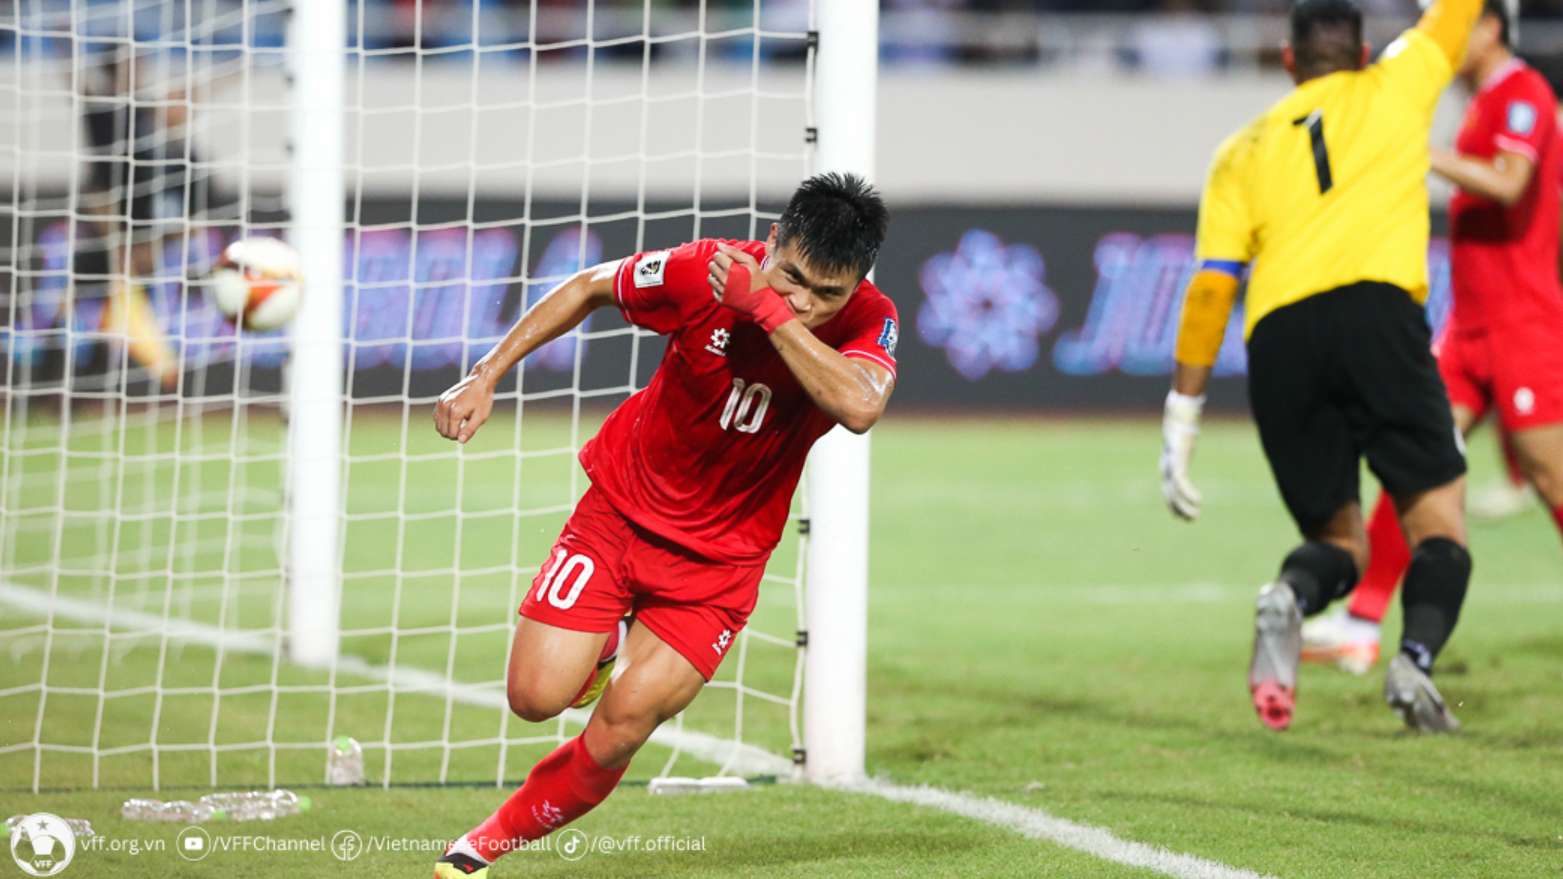 Báo Indonesia lo lắng khi đội tuyển Việt Nam chiến thắng - Ảnh 1